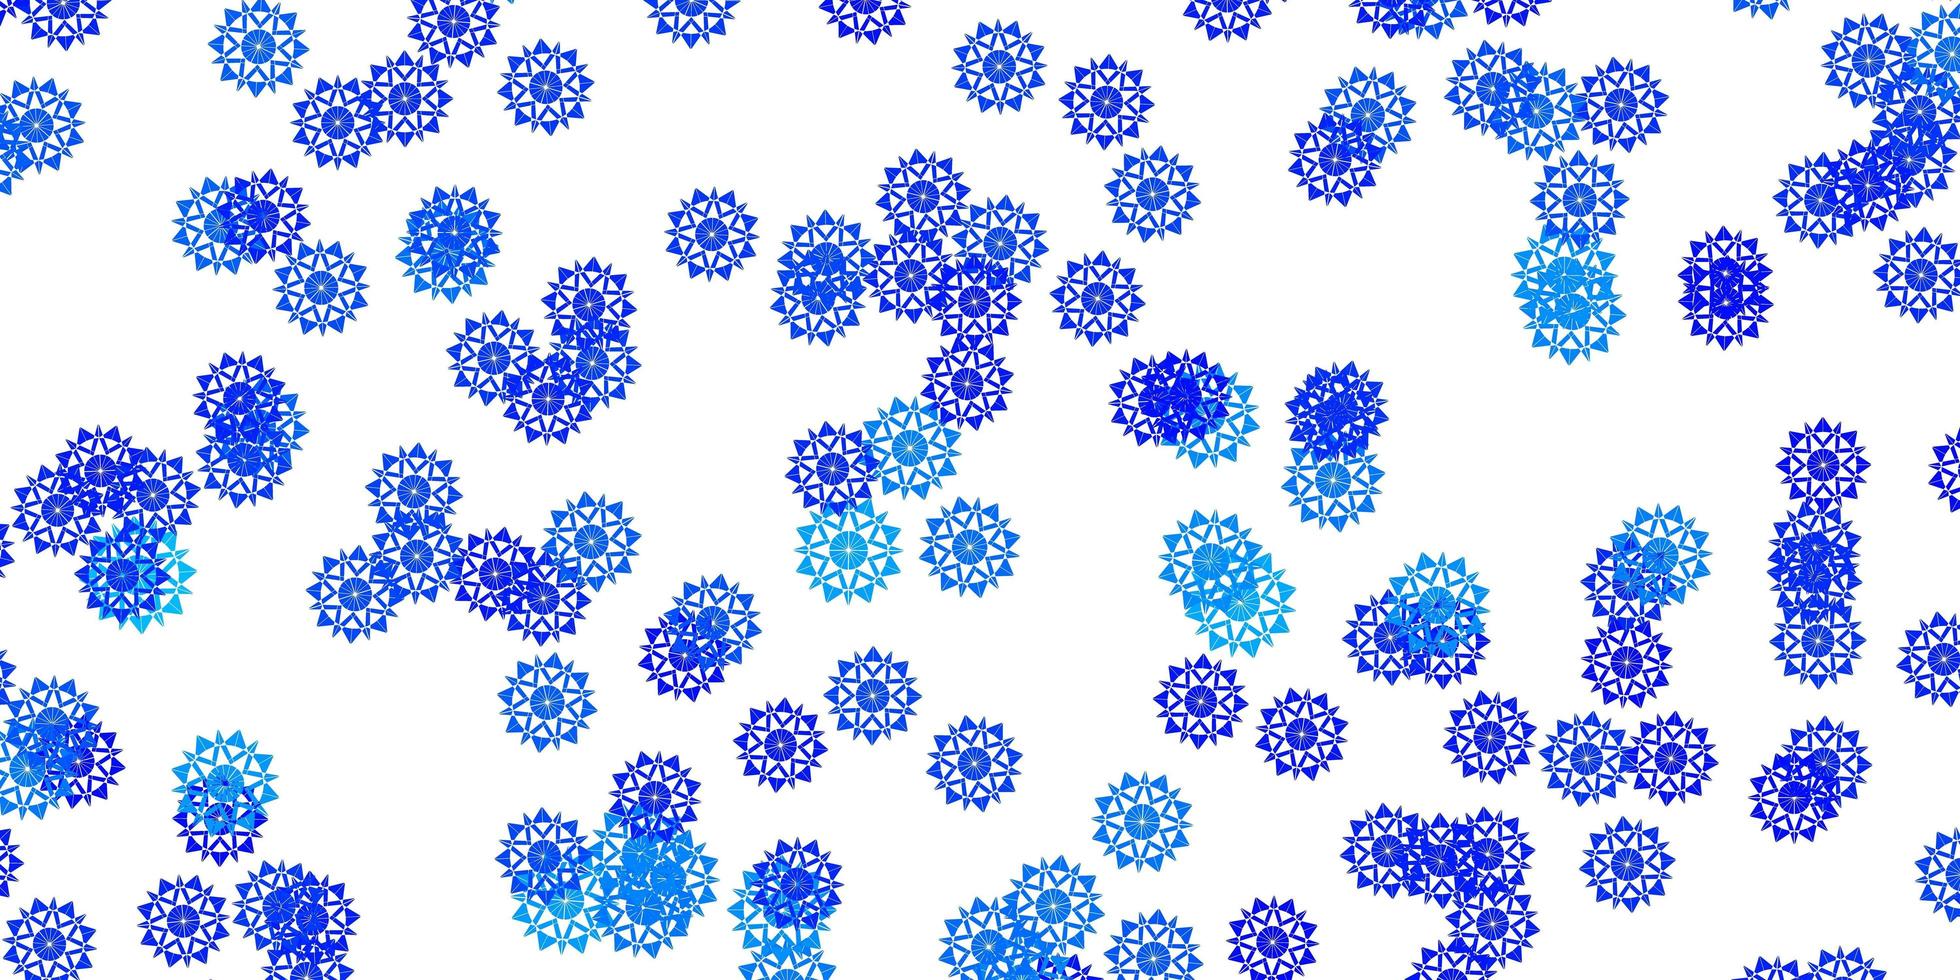 textura vector azul claro com flocos de neve brilhantes.